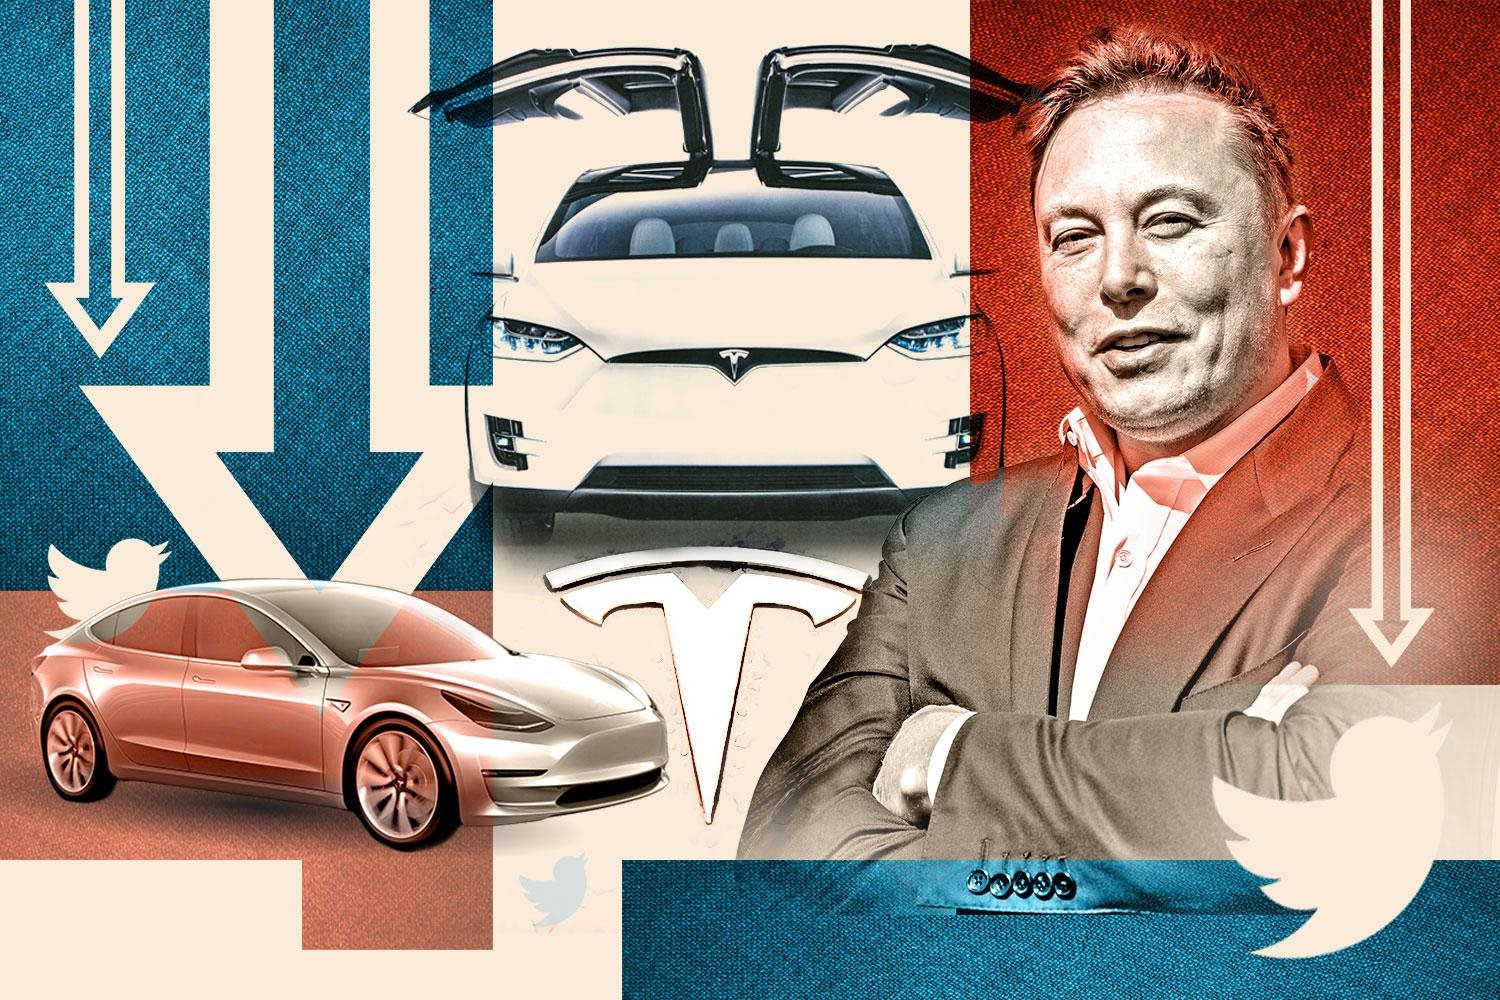 Cạnh tranh giành với Tesla Ford trình làng xe cộ năng lượng điện Mustang MachE  Automotive   tin tức hình hình ảnh Đánh Giá xe cộ ôtô xe cộ máy xe cộ năng lượng điện  VnEconomy